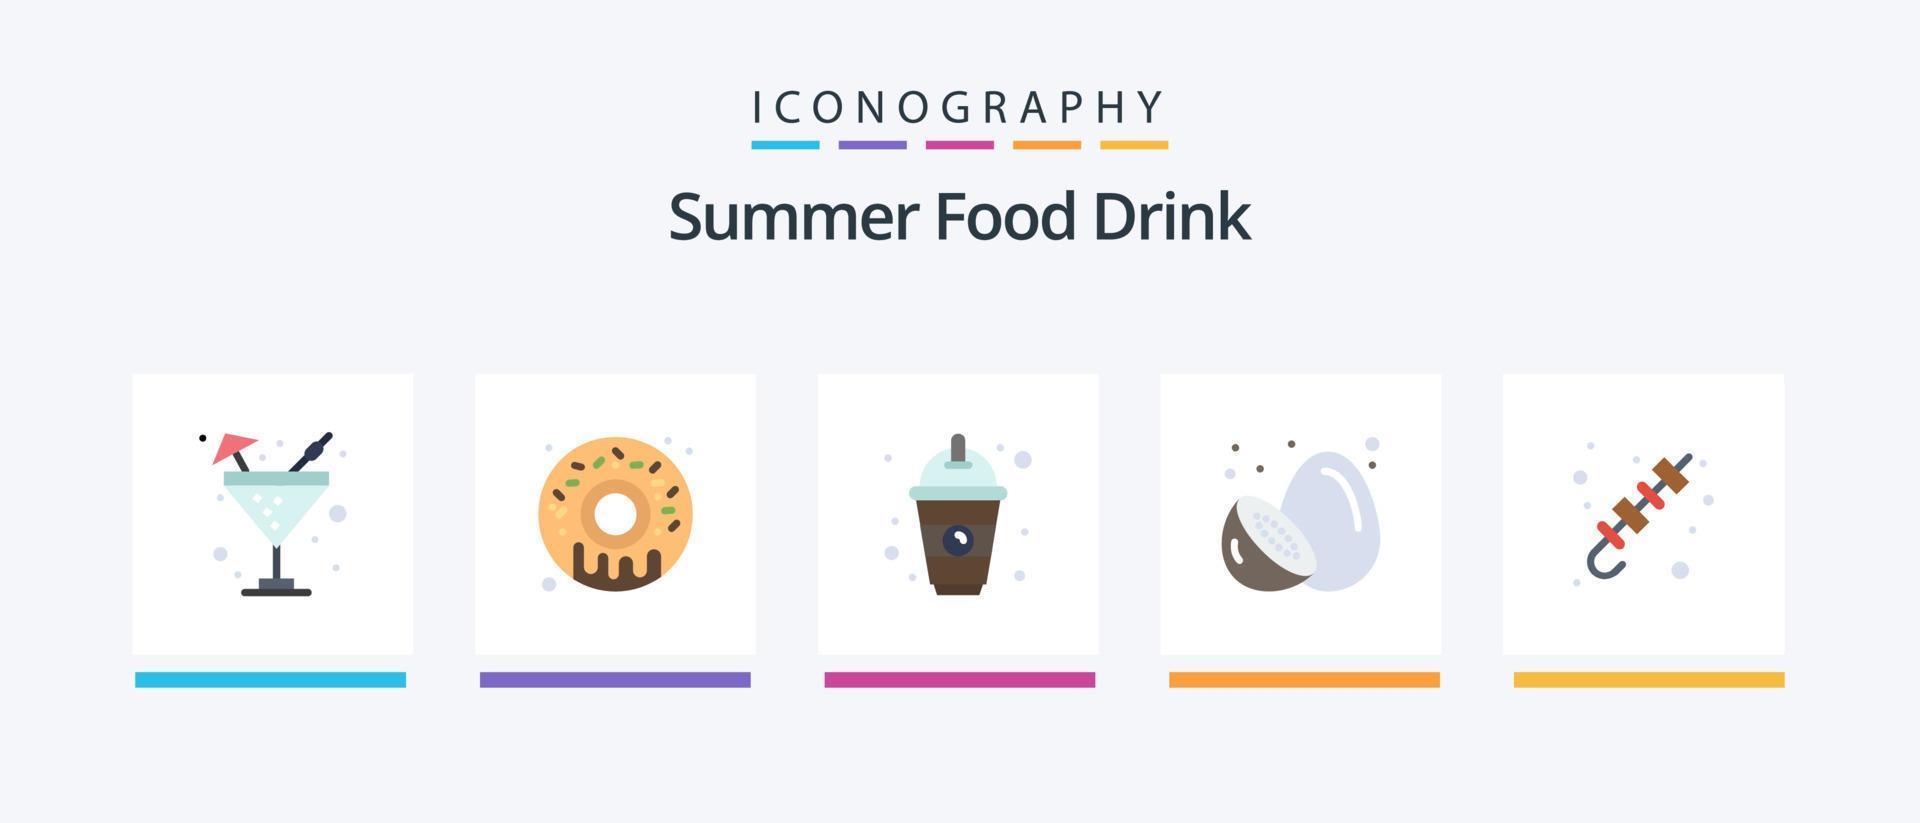 pacote de ícones de 5 ícones de comida de verão, incluindo churrasco. fruta de verão. bebida. kiwi. fruta. design de ícones criativos vetor